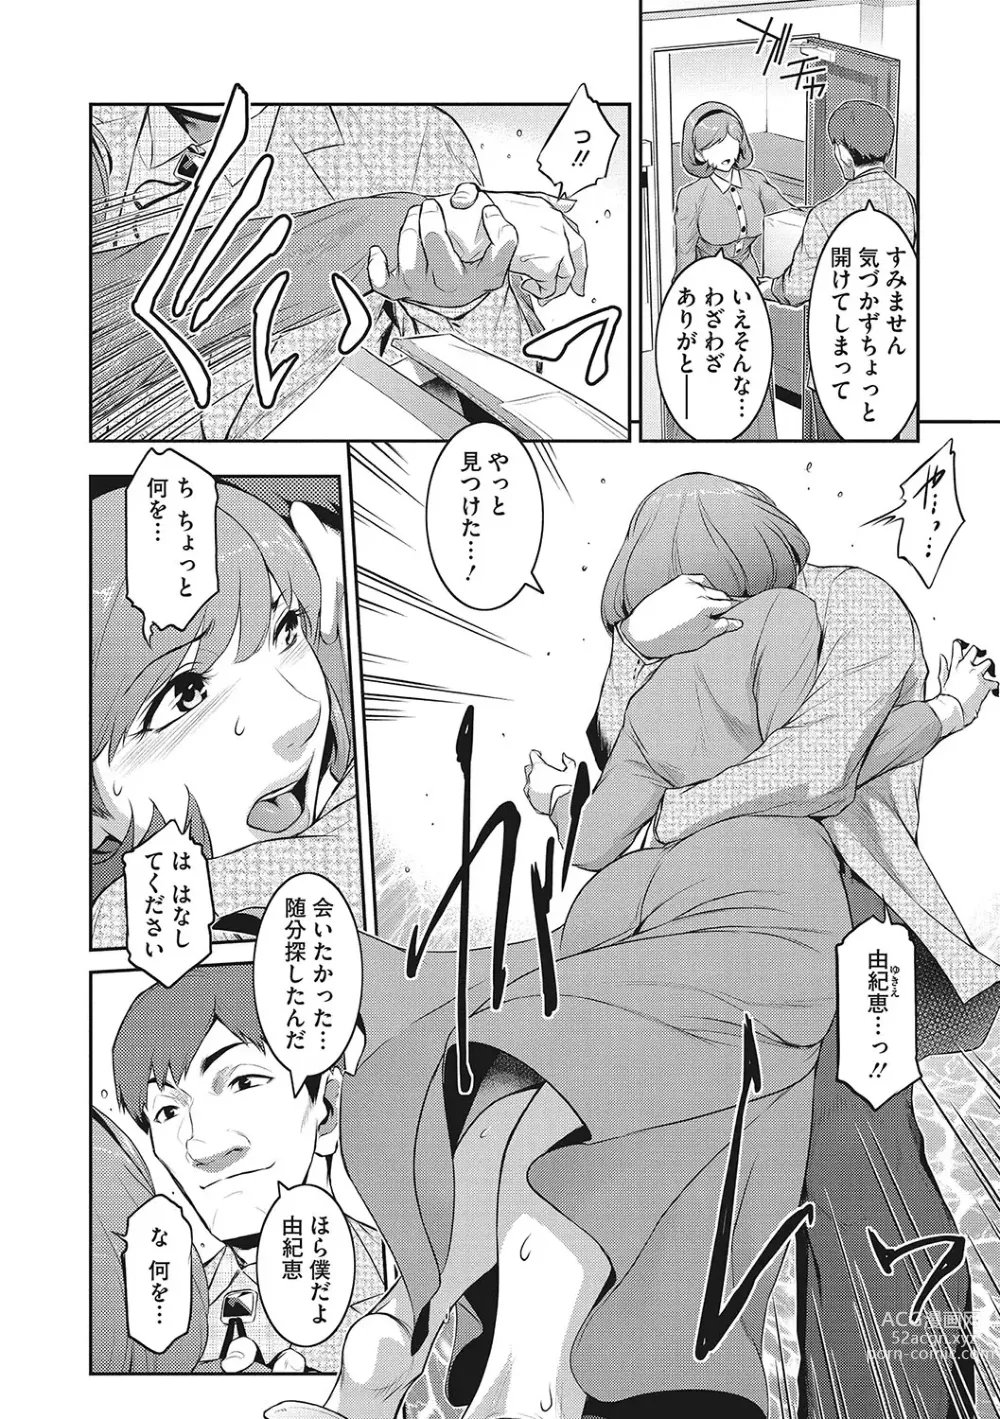 Page 11 of manga Genwaku